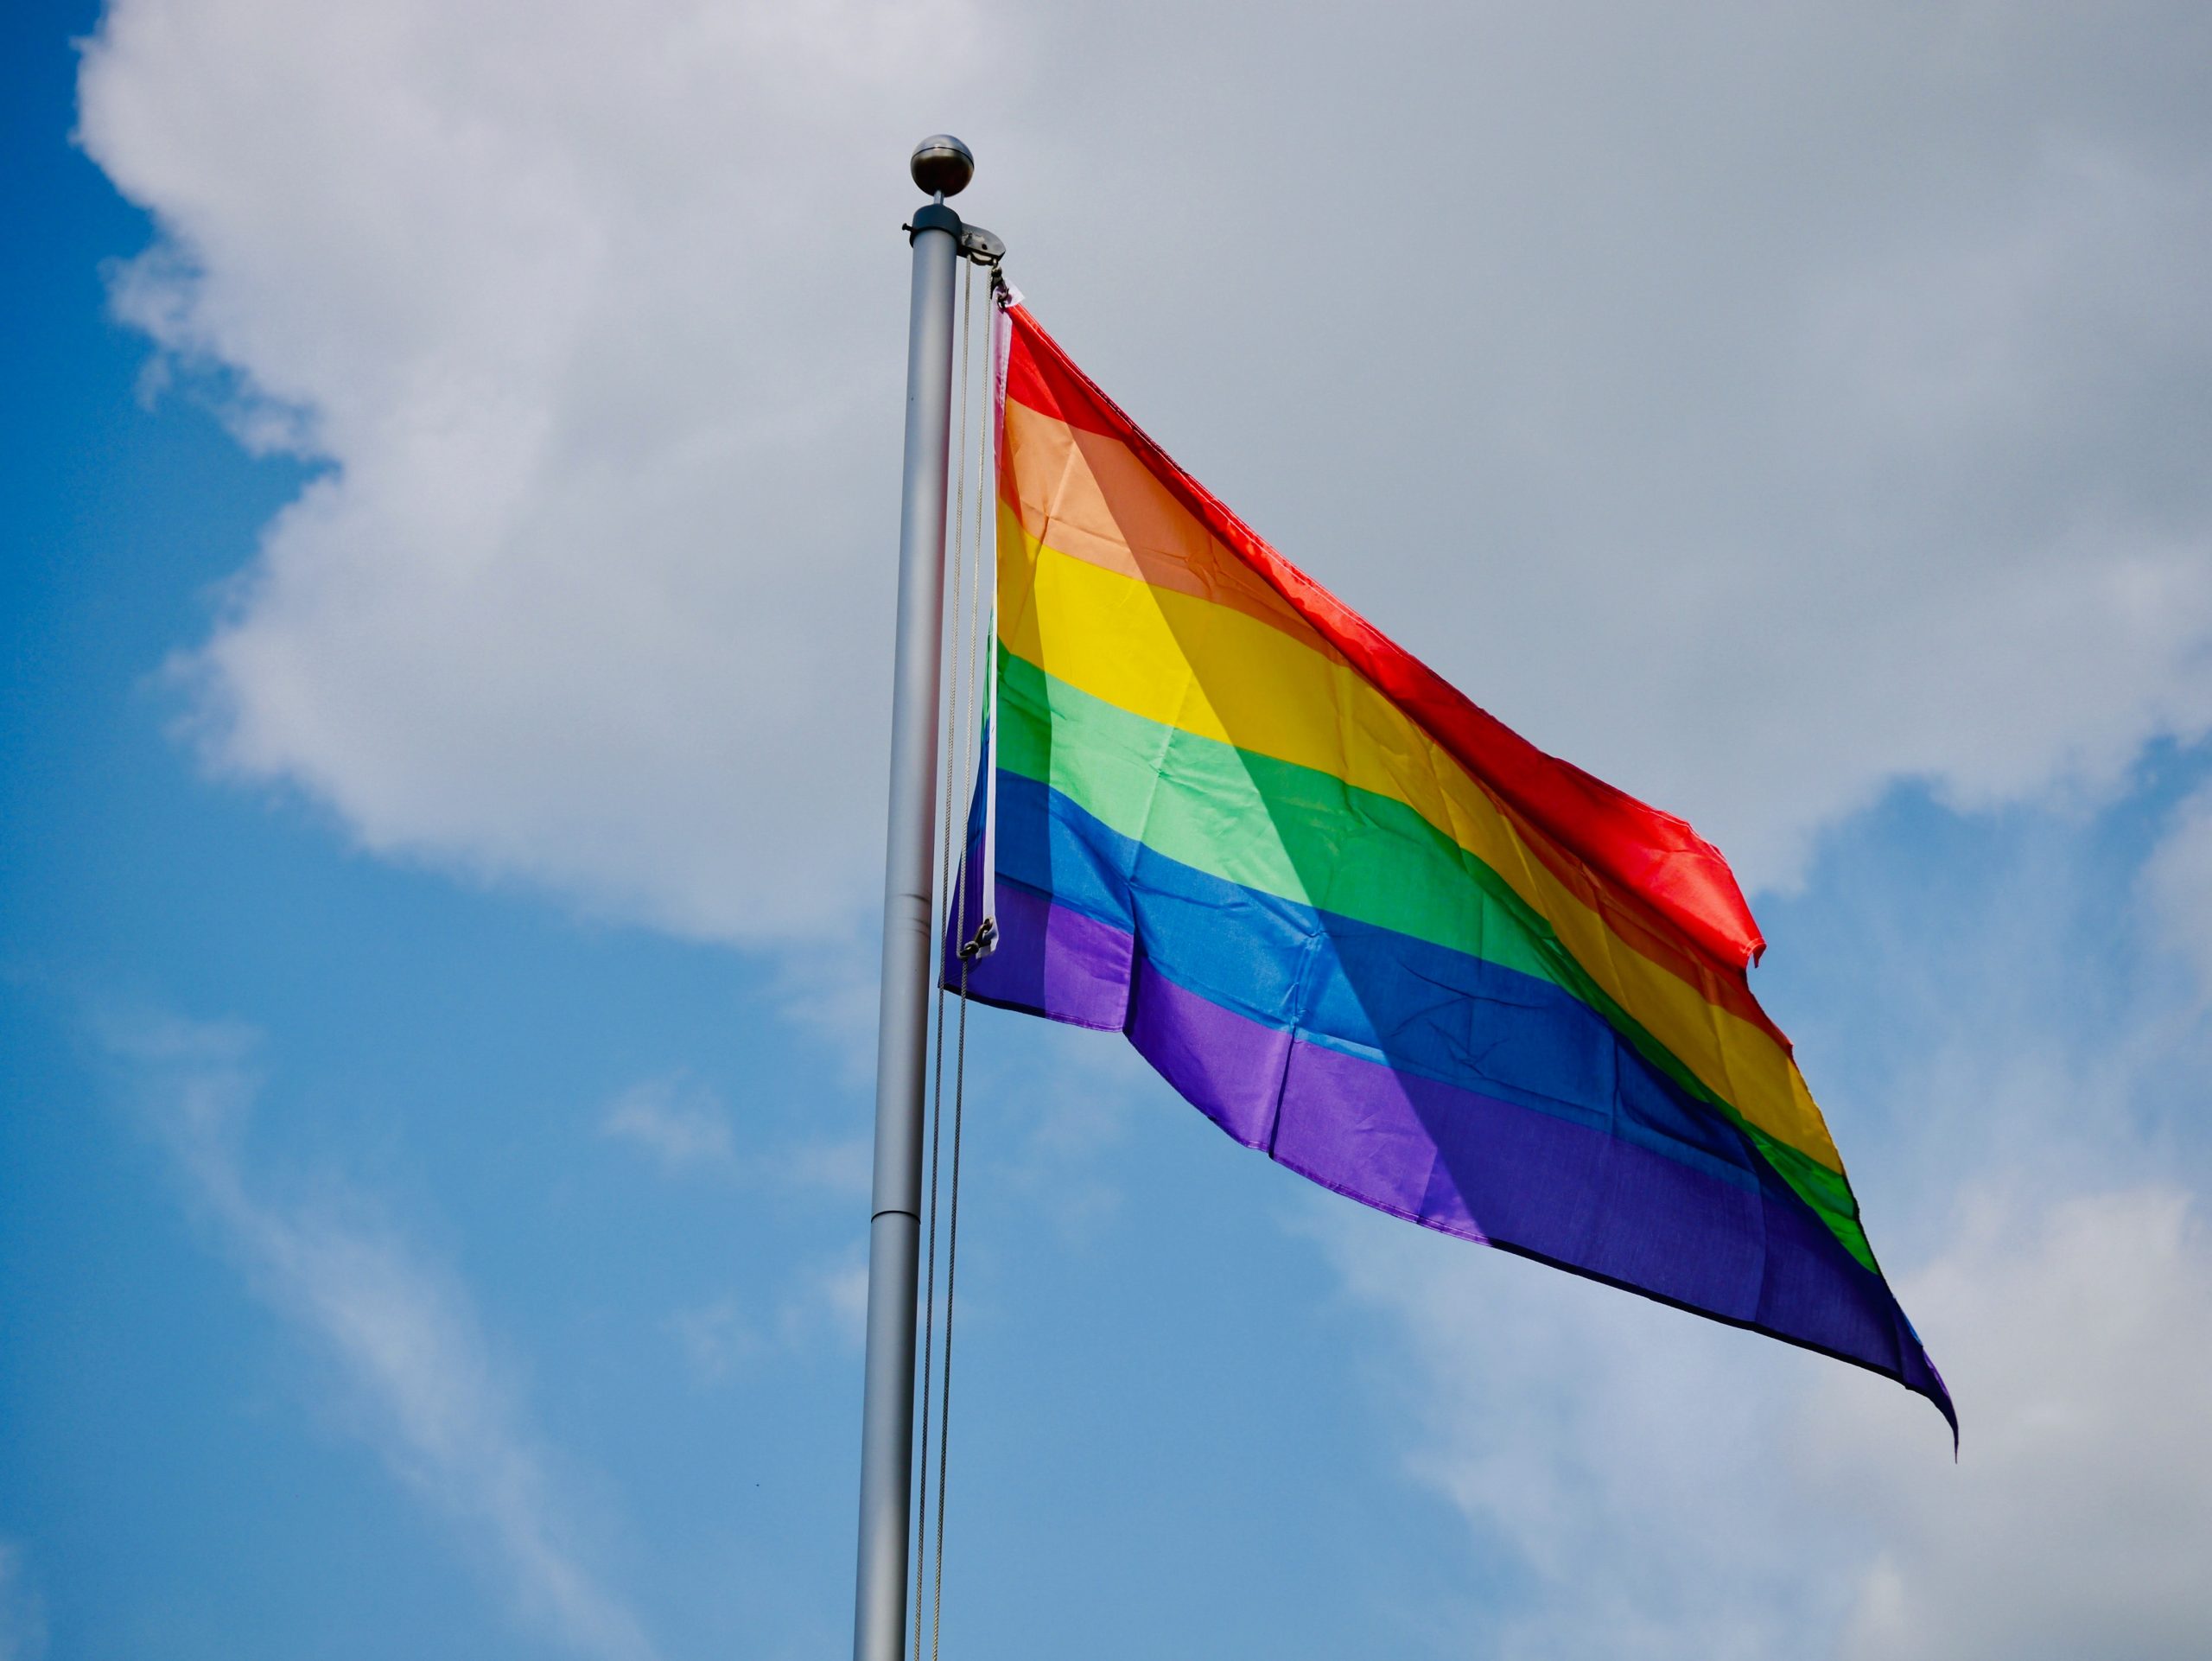 LGBTQ+ Pride Flag on a pole